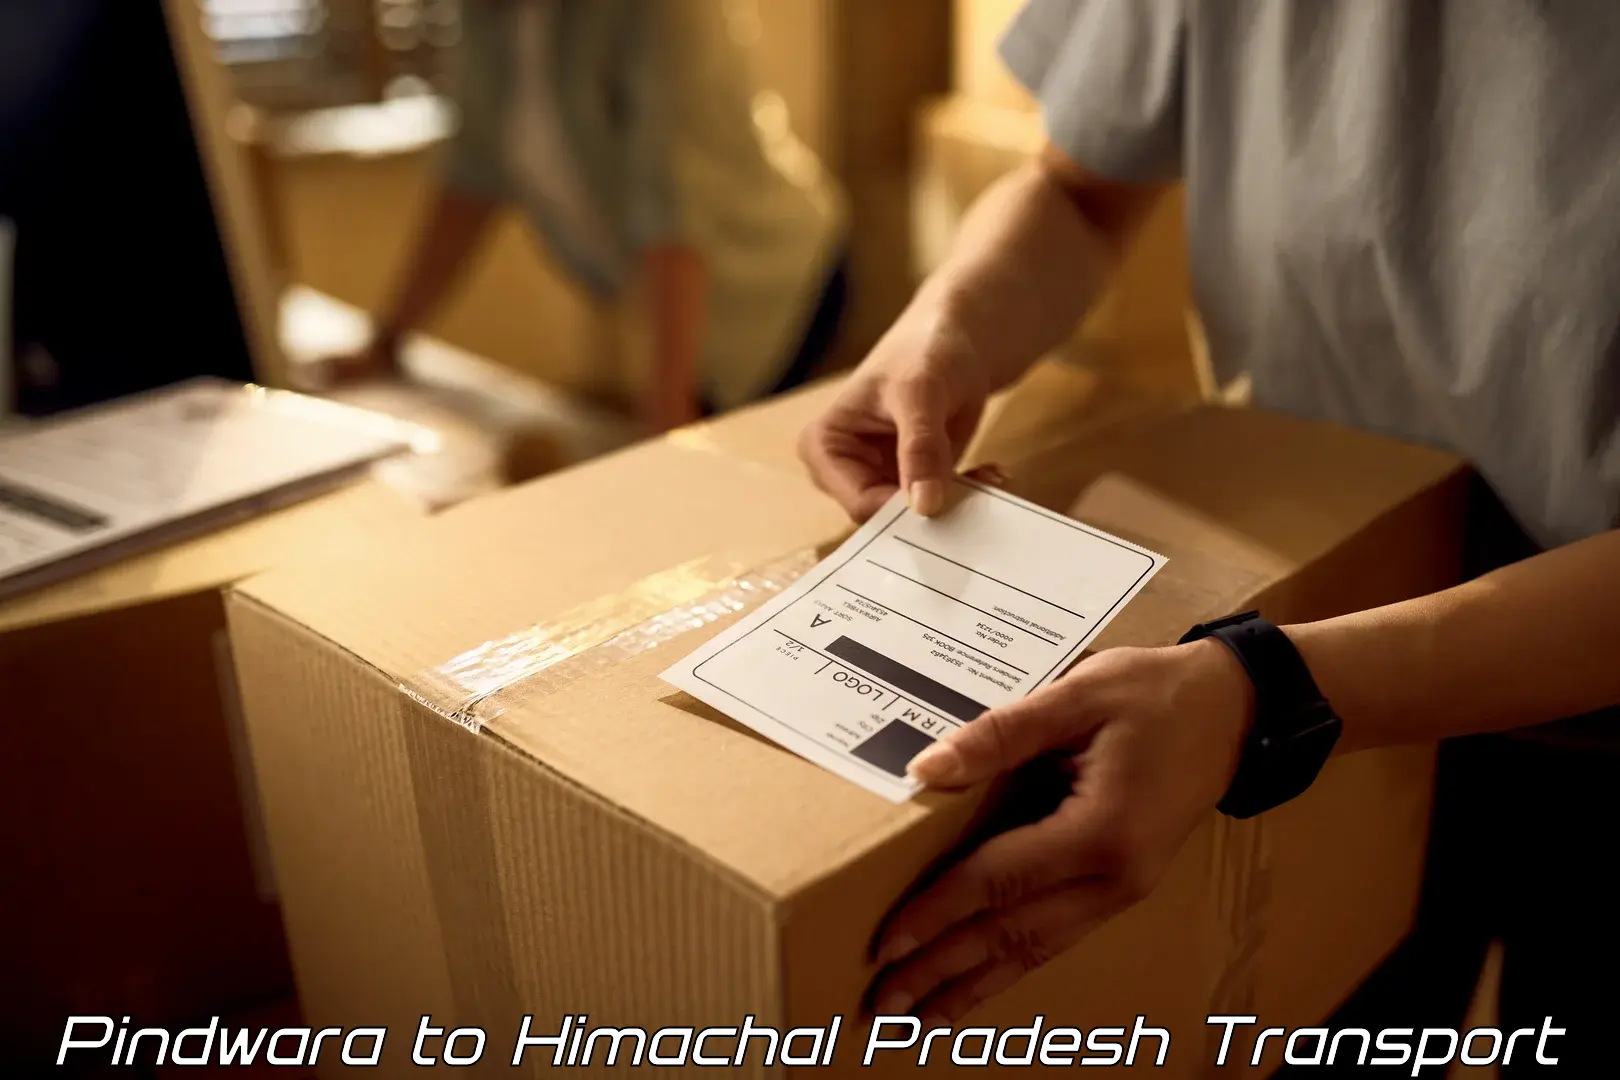 Pick up transport service Pindwara to Dharamshala